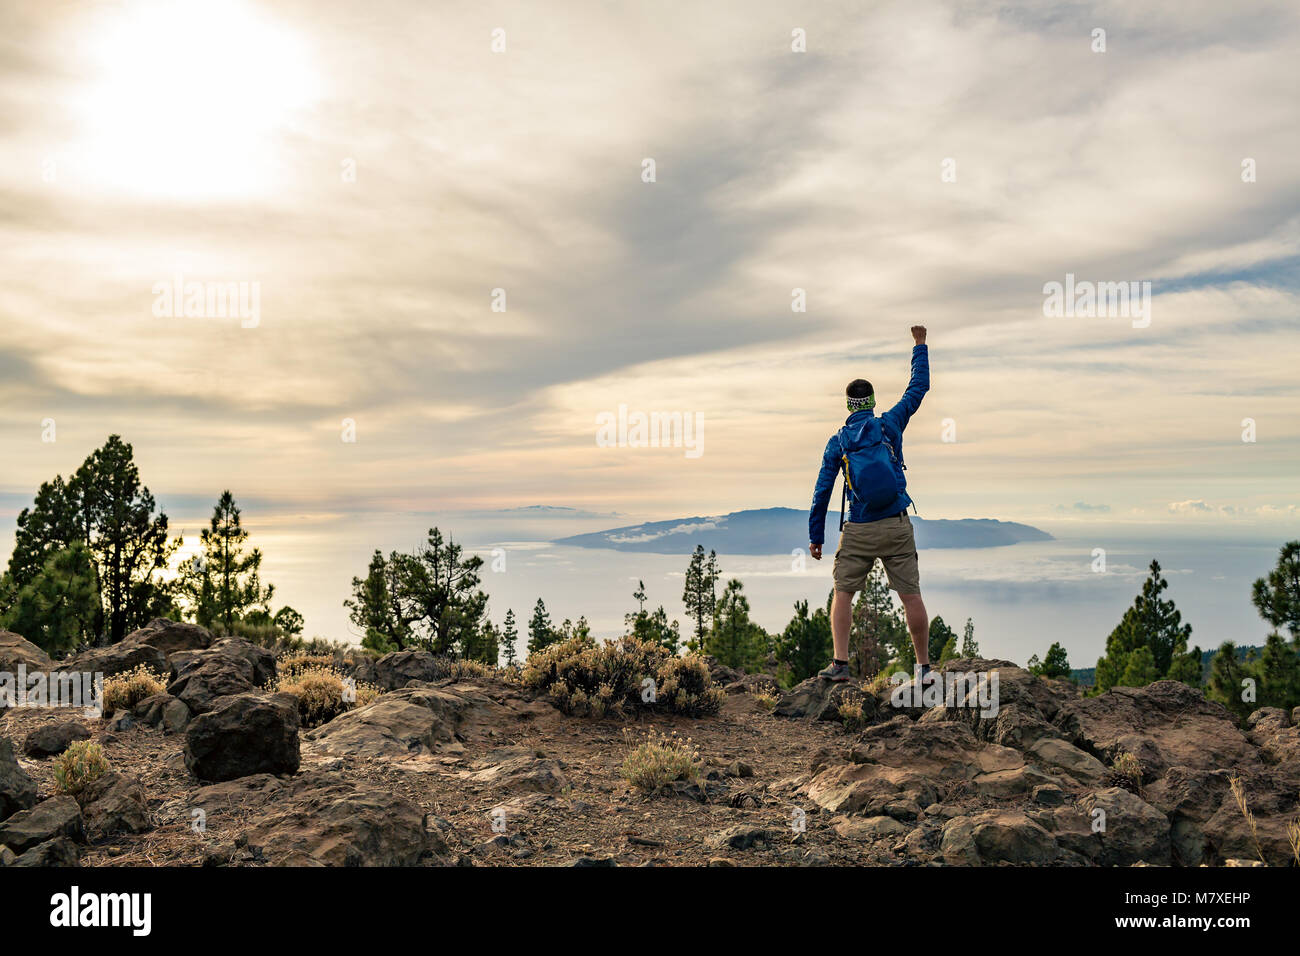 Mann feiern Sonnenuntergang an der Blick in die Berge. Trail Runner, Wanderer oder Bergsteiger erreicht oben auf einem Berg, geniessen Sie inspirierende Landschaft auf felsigen Stockfoto